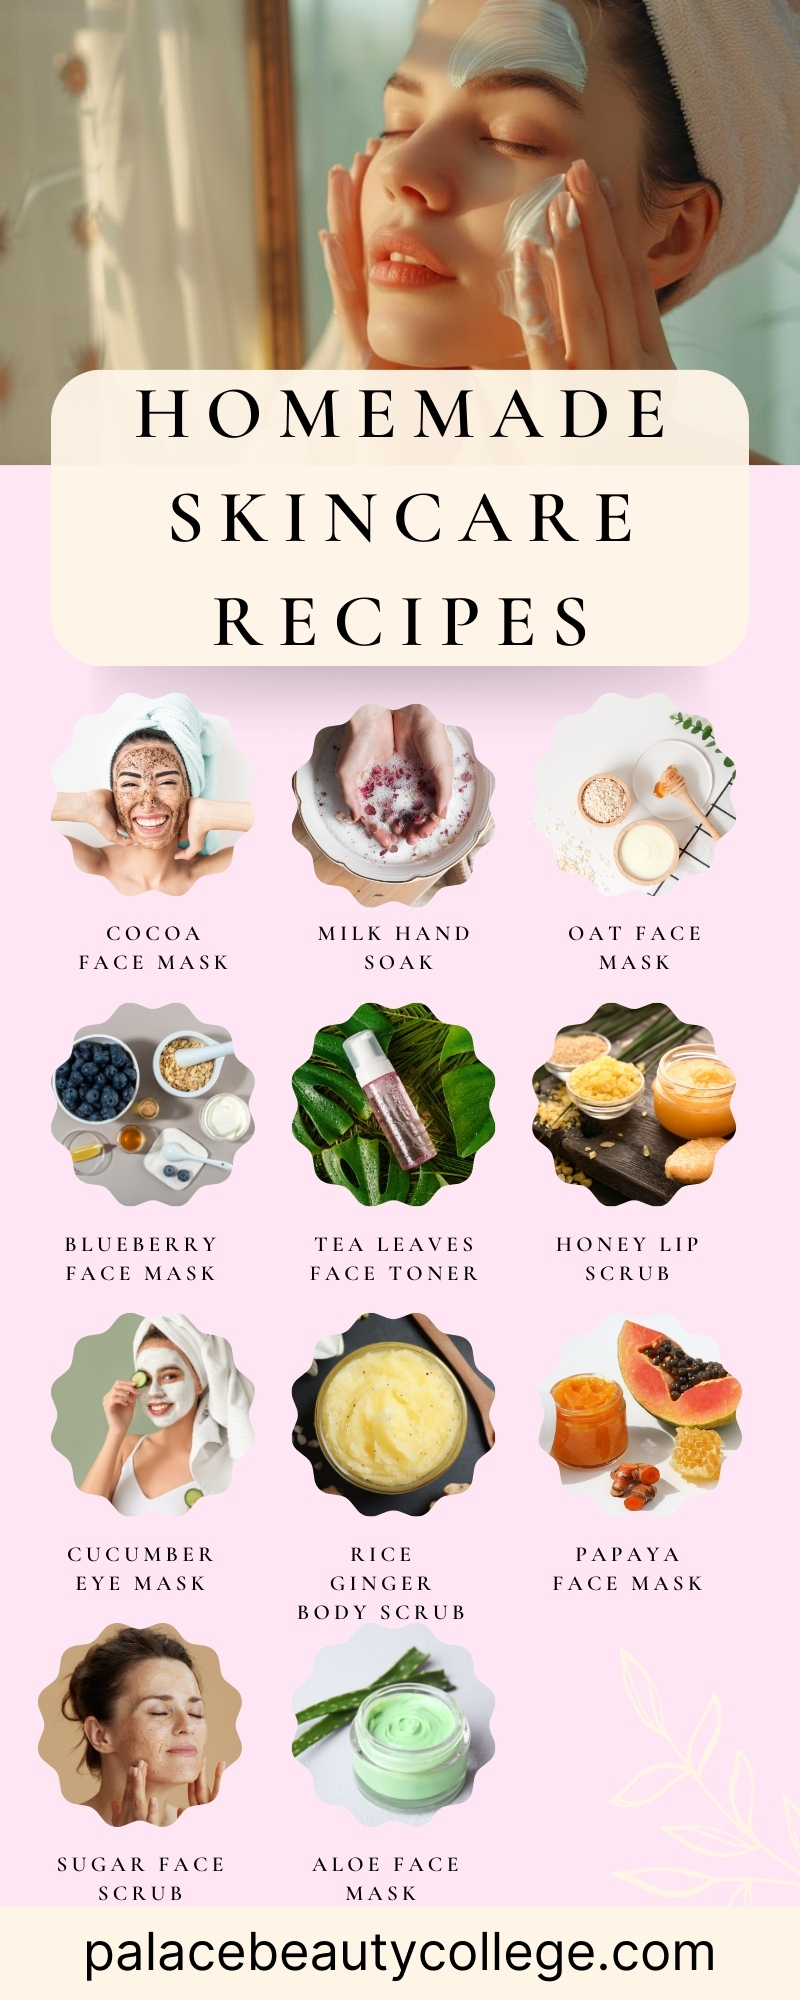 Homemade Skincare Recipes Infographic